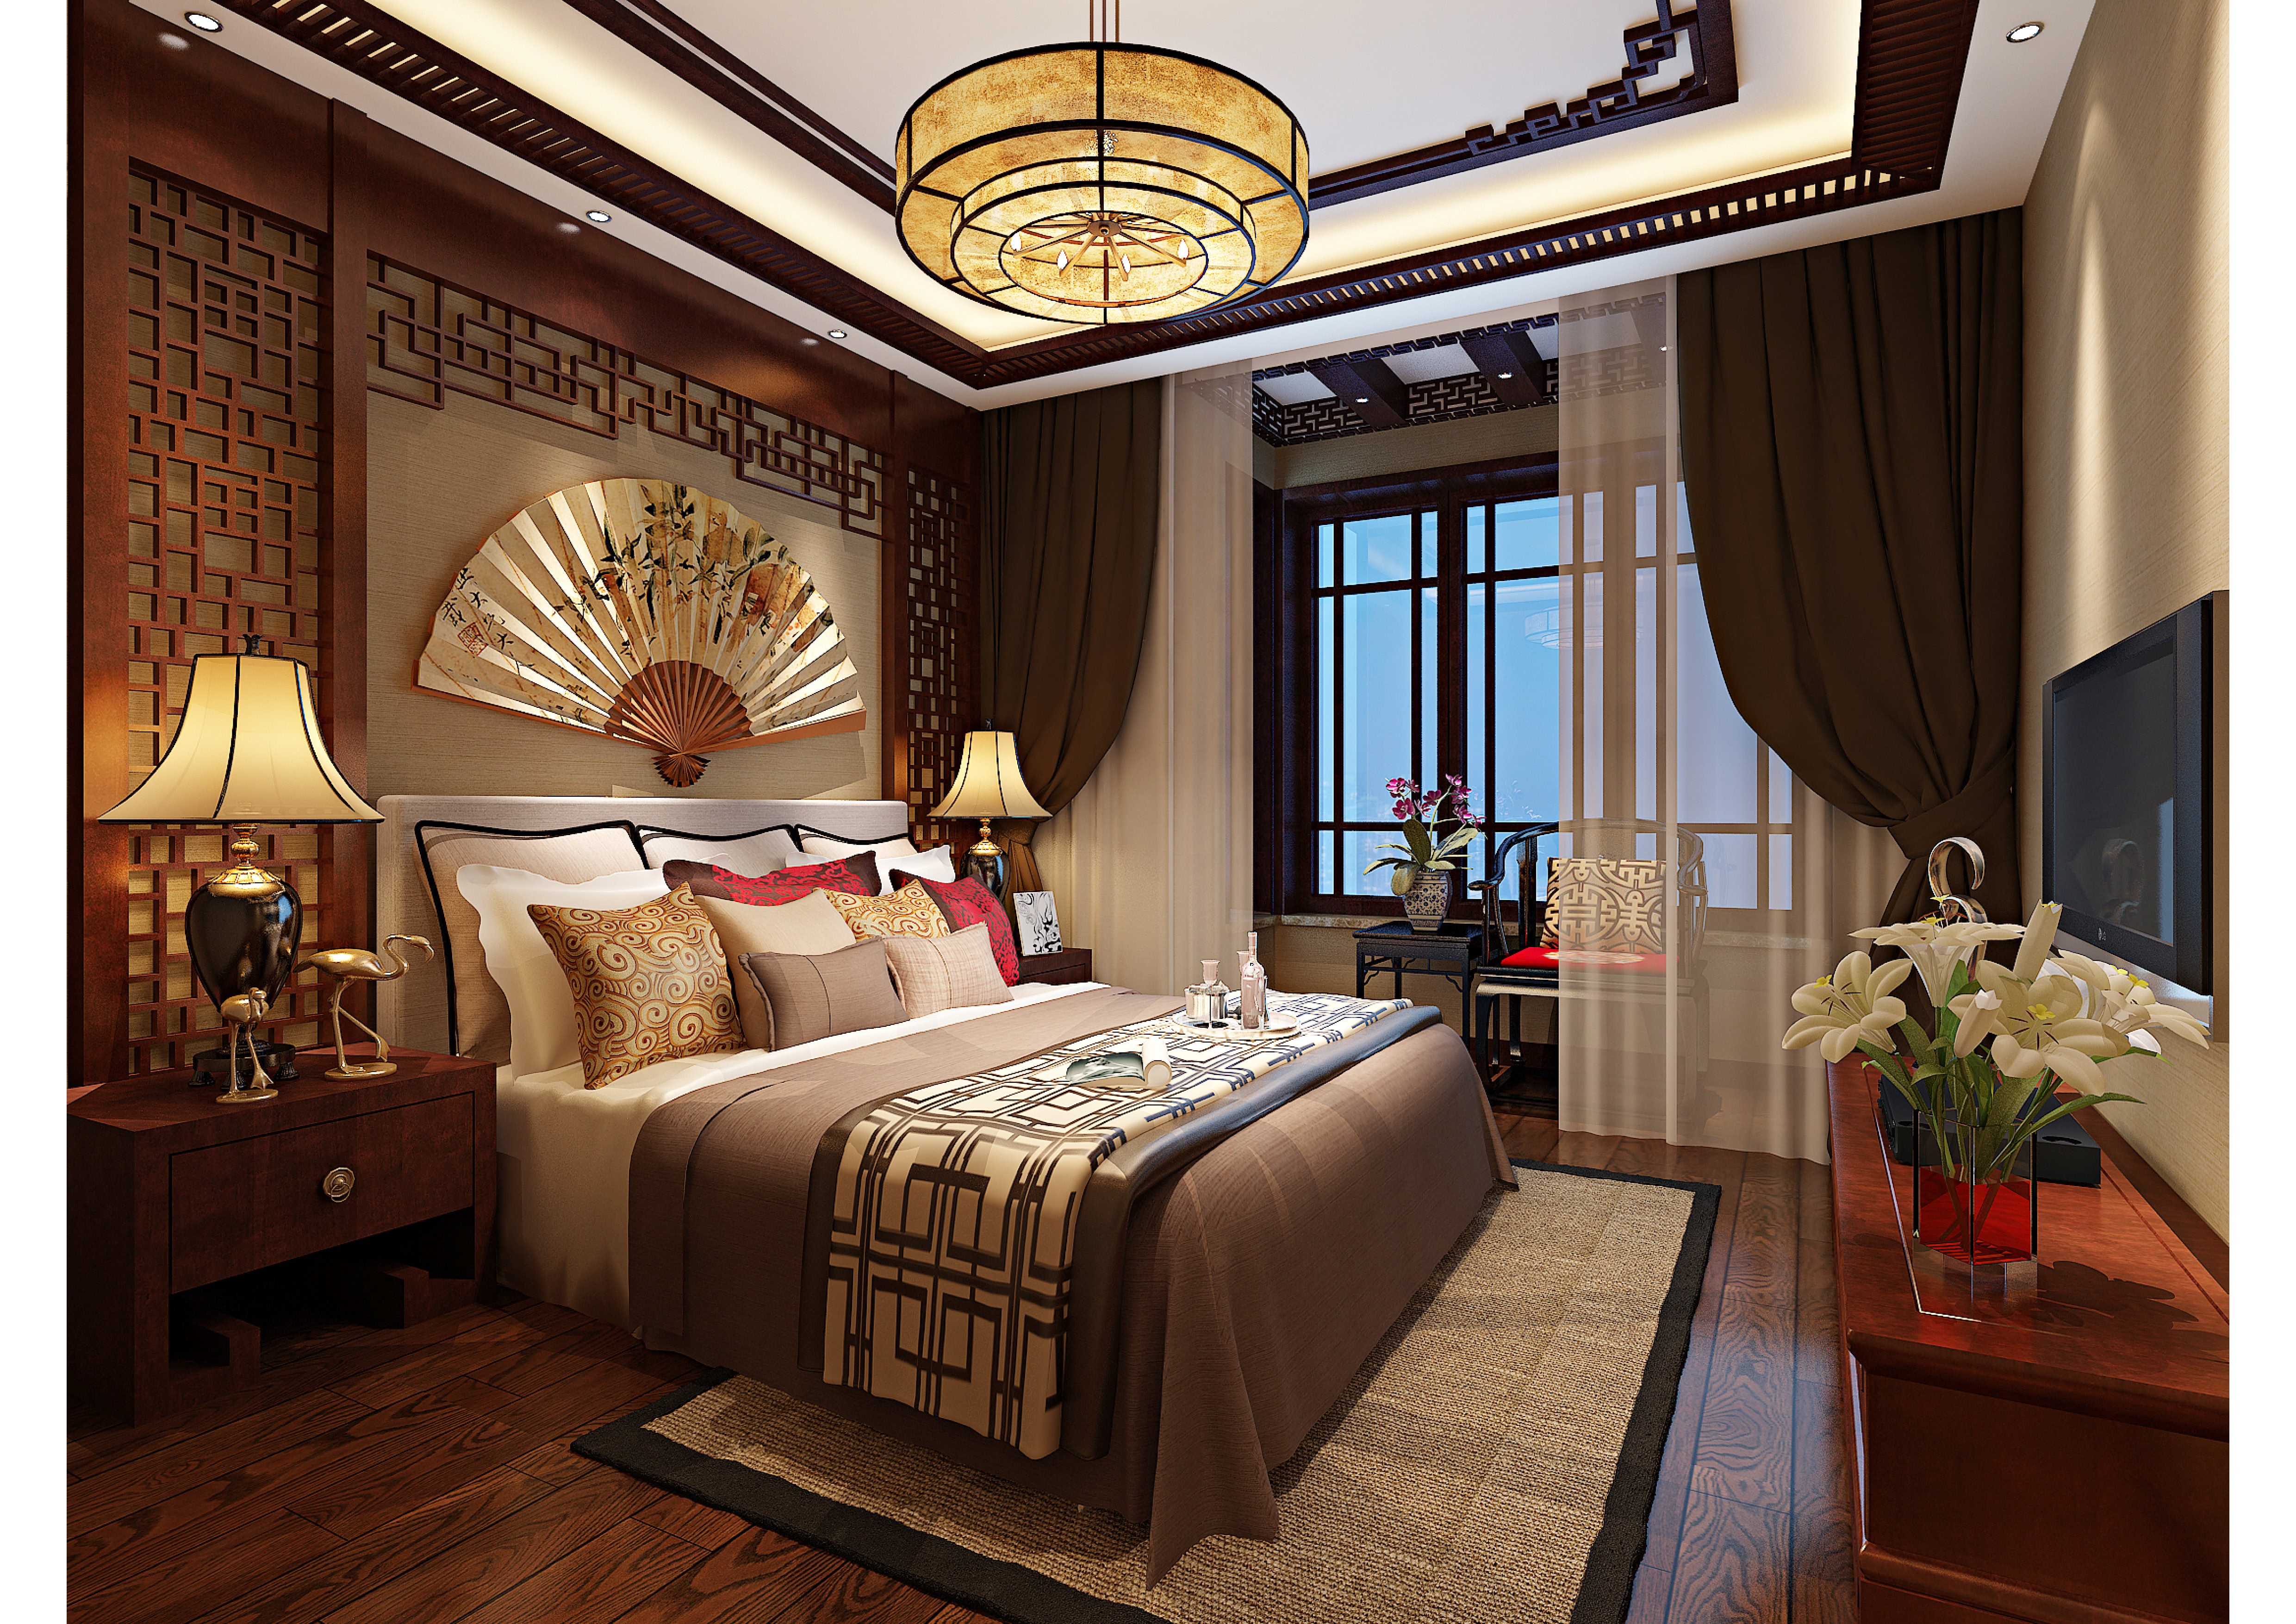 中式古典风格的室内设计